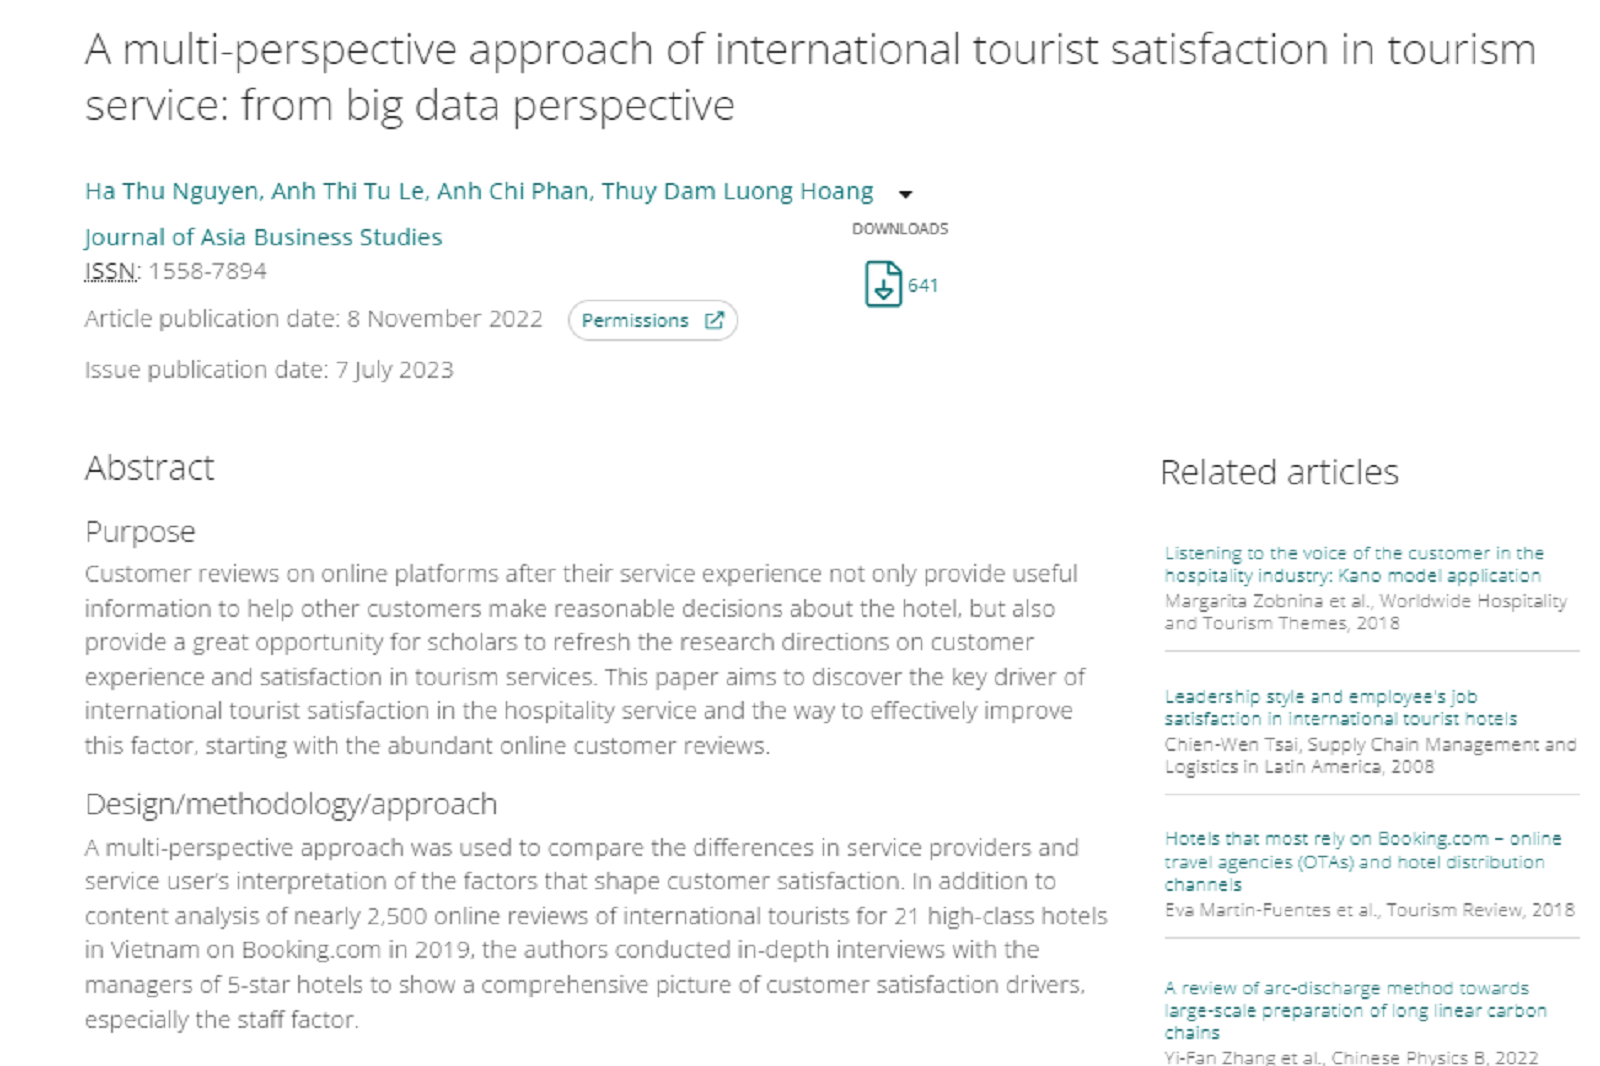 Cách tiếp cận đa khía cạnh về sự hài lòng của du khách quốc tế đối với dịch vụ du lịch: Nghiên cứu từ góc độ dữ liệu lớn